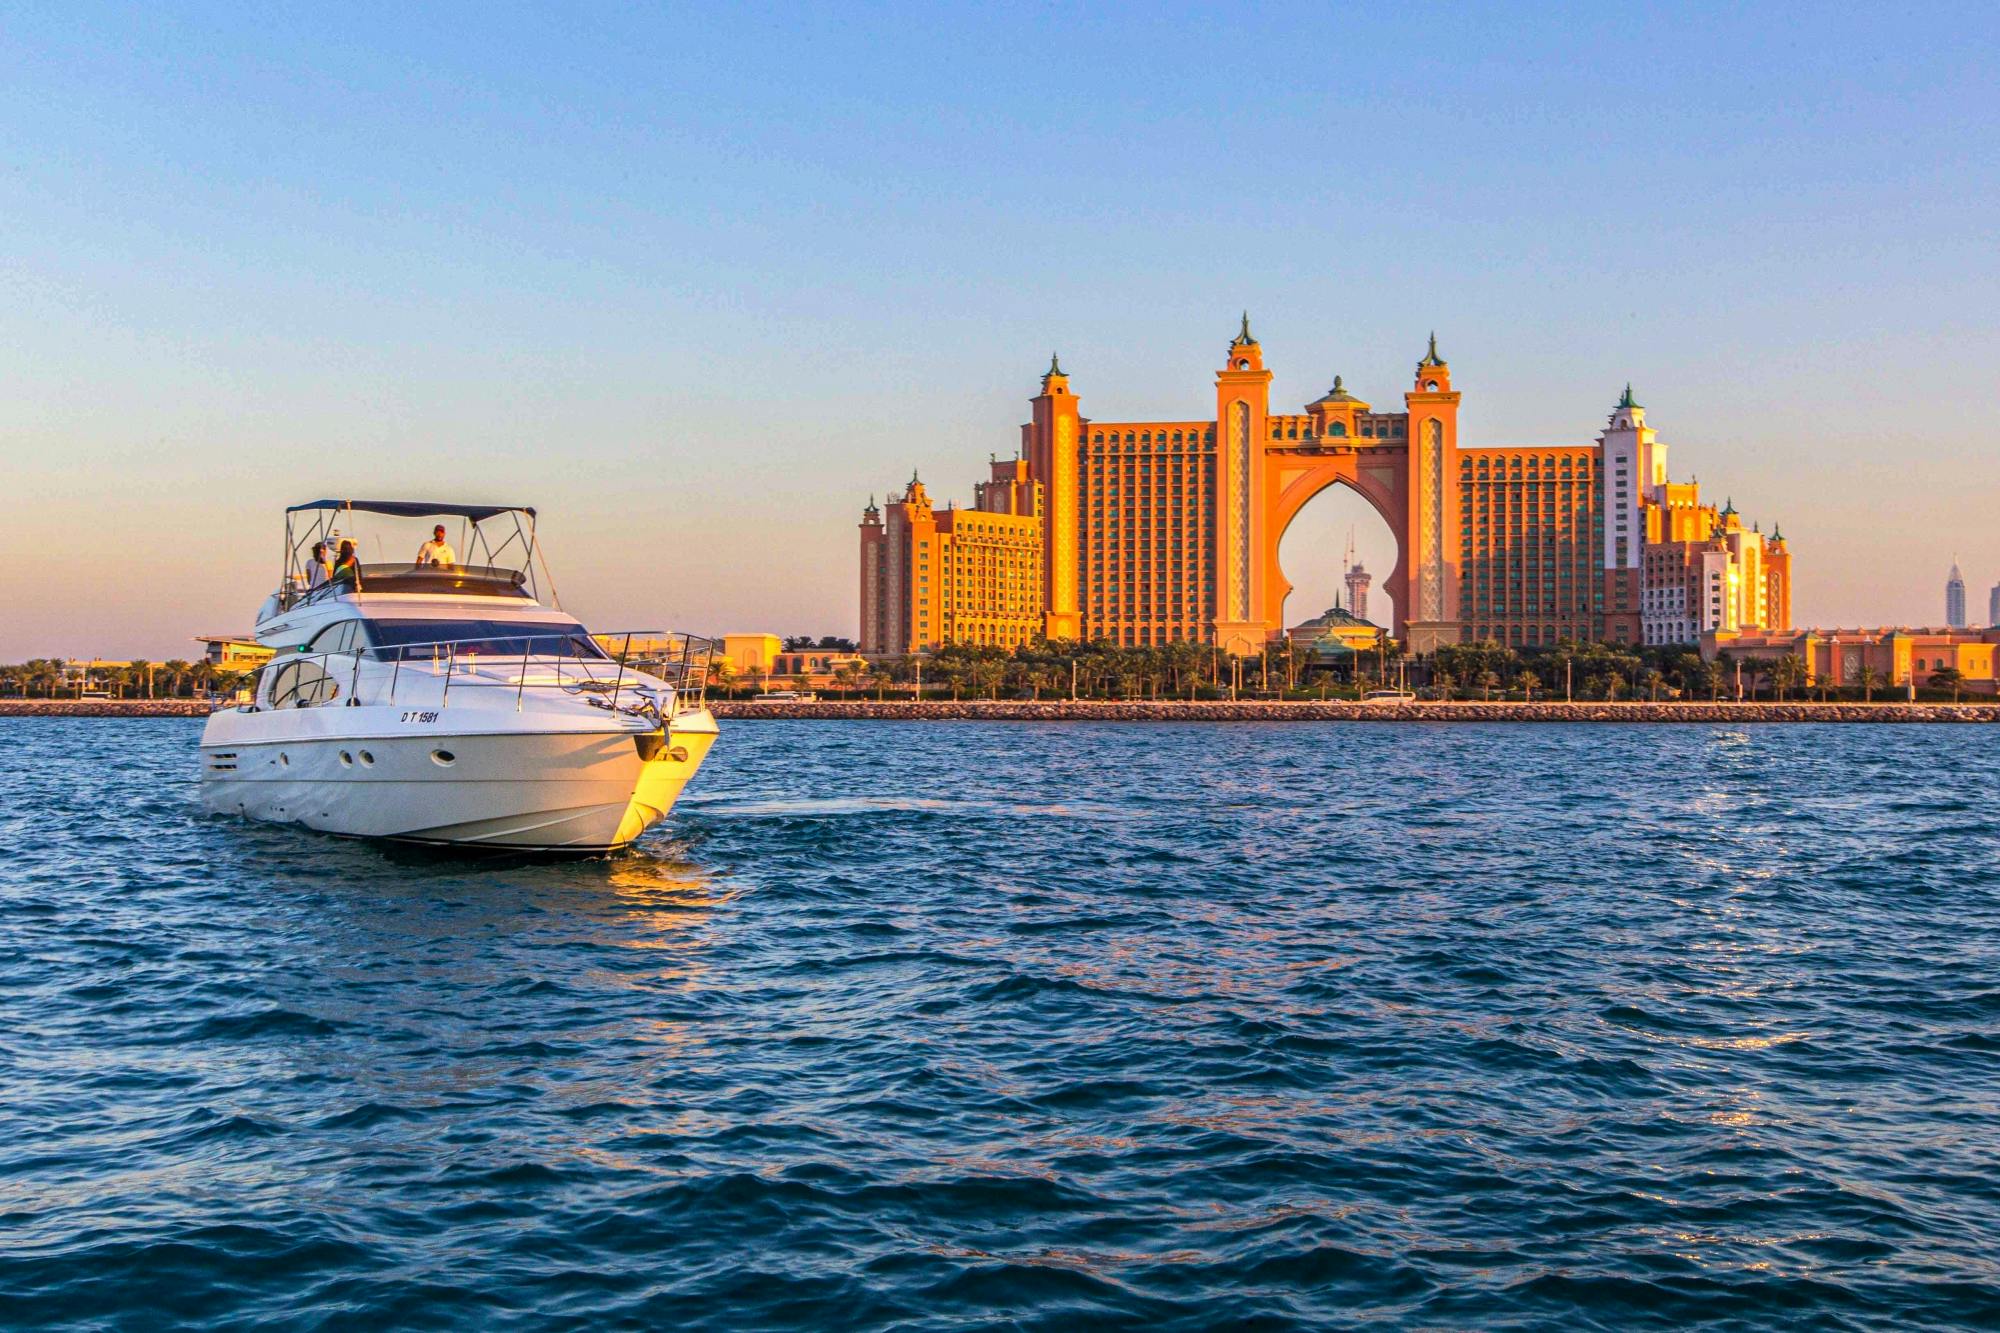 Dubai luxury yacht private cruise on the yacht Etosha